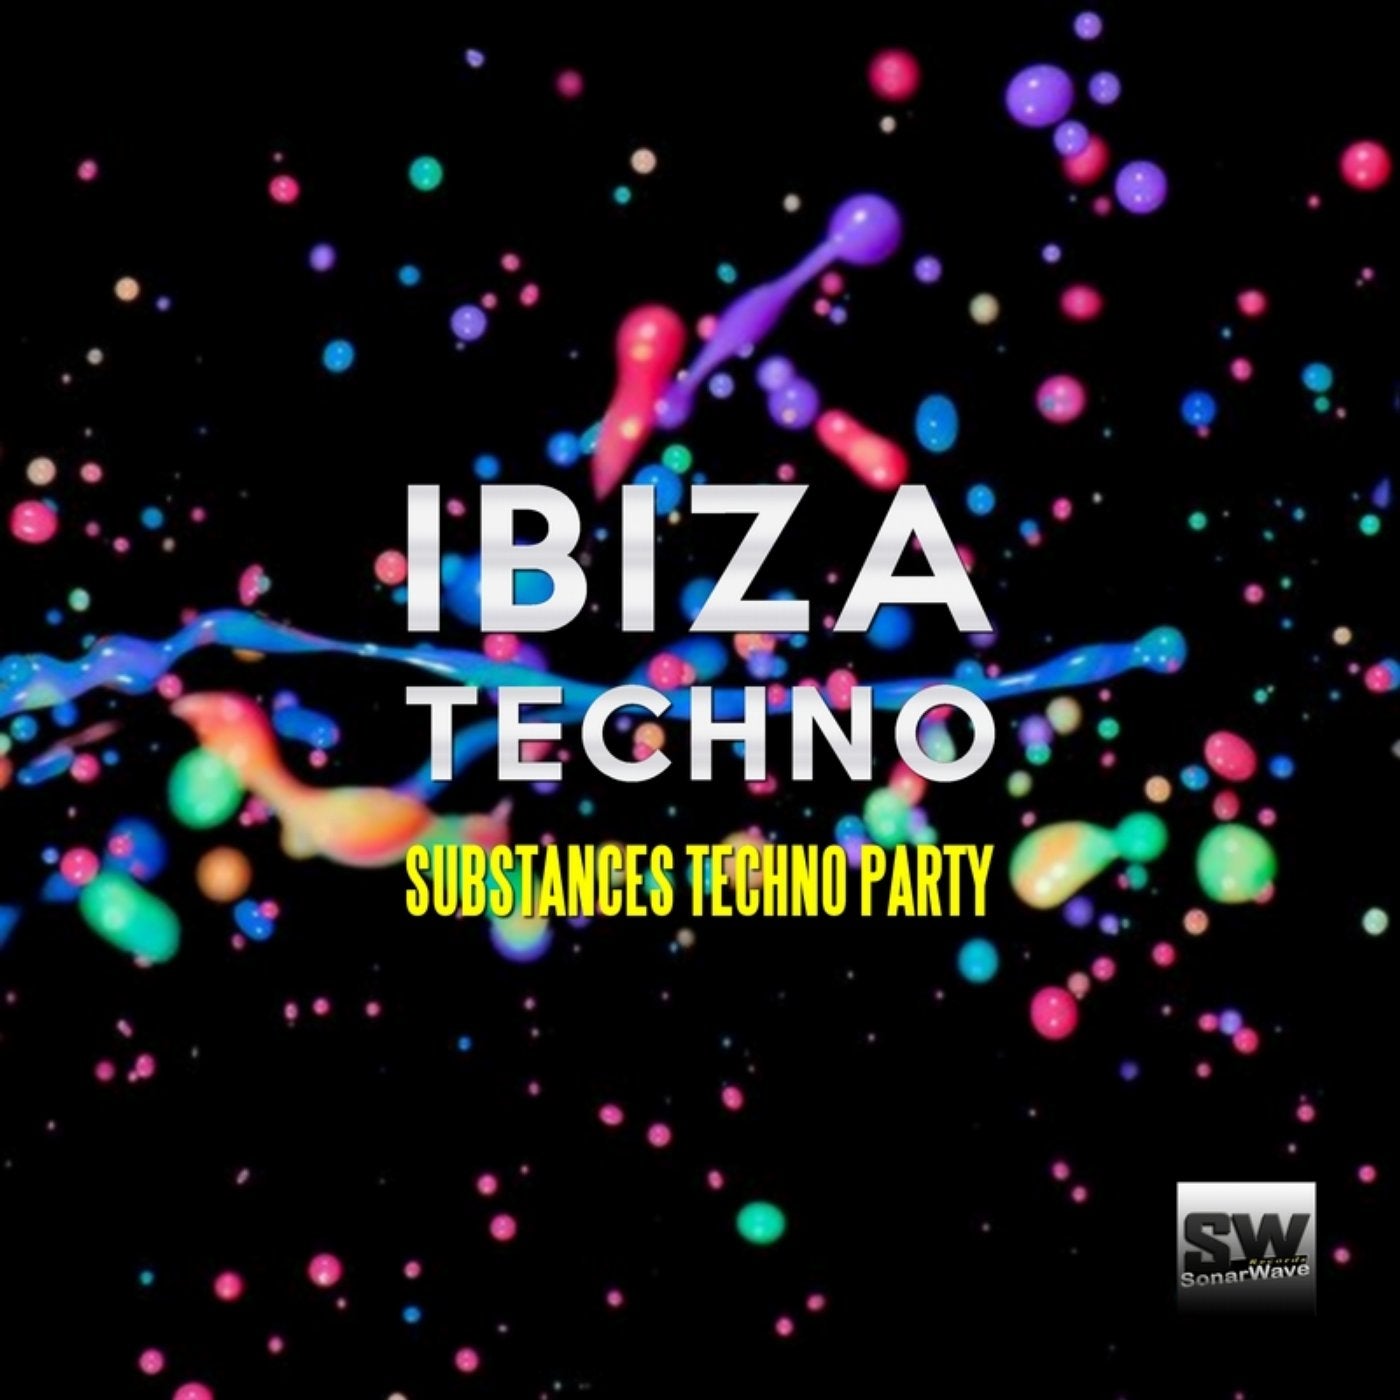 Ibiza Techno (Substances Techno Party)